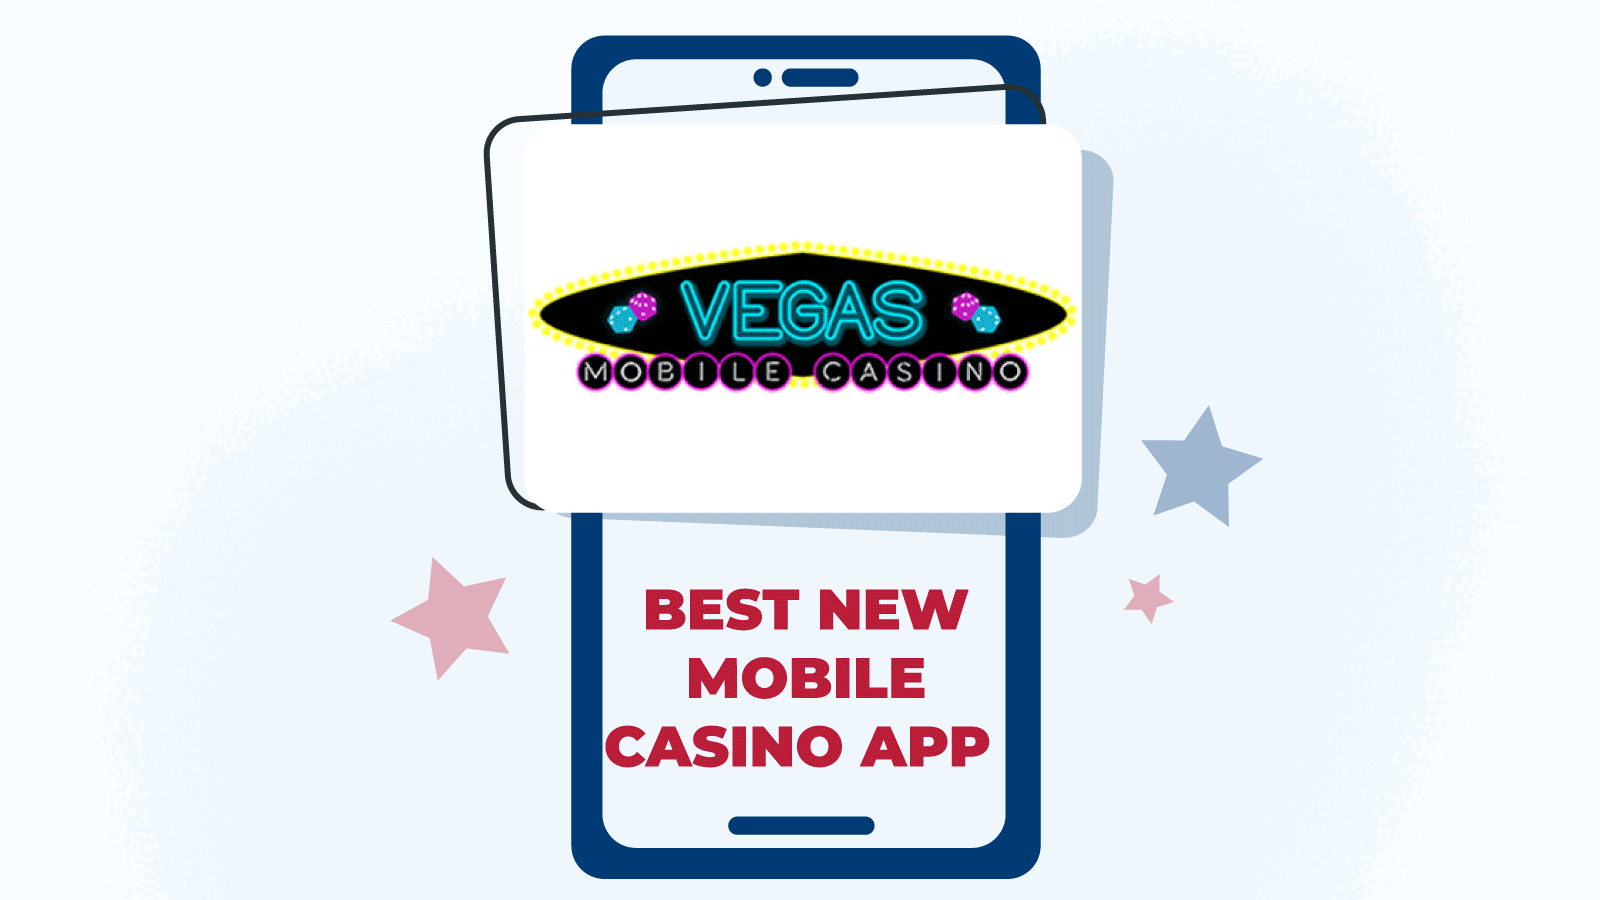 Vegas Mobile Casino – Best New Mobile Casino App